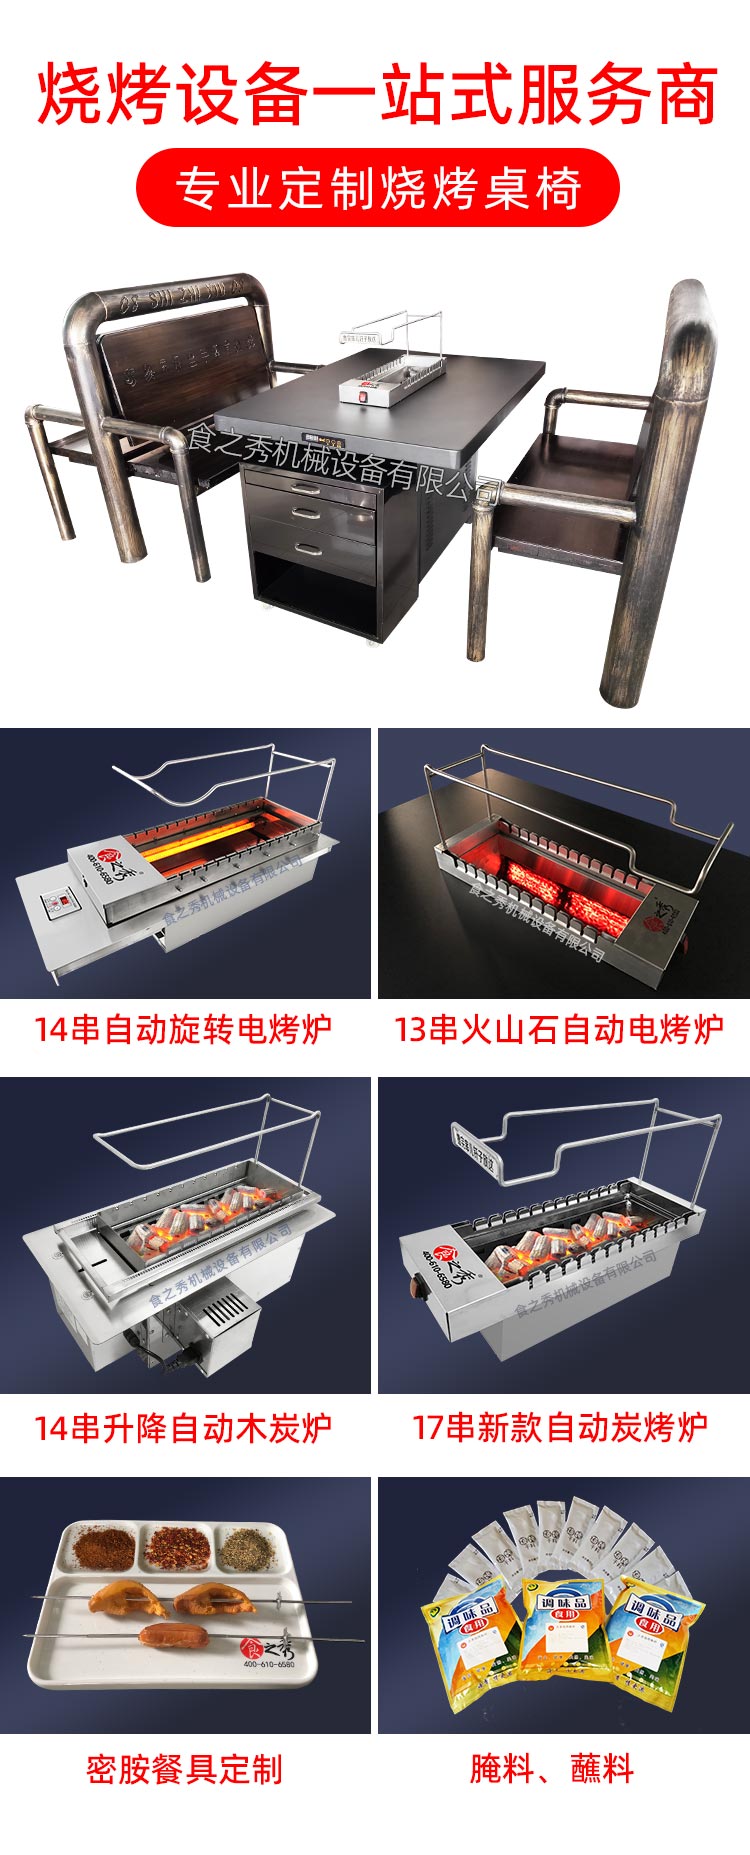 食之秀自动烧烤设备厂提供烧烤店用自动烧烤机、桌椅餐具等整店设备供应